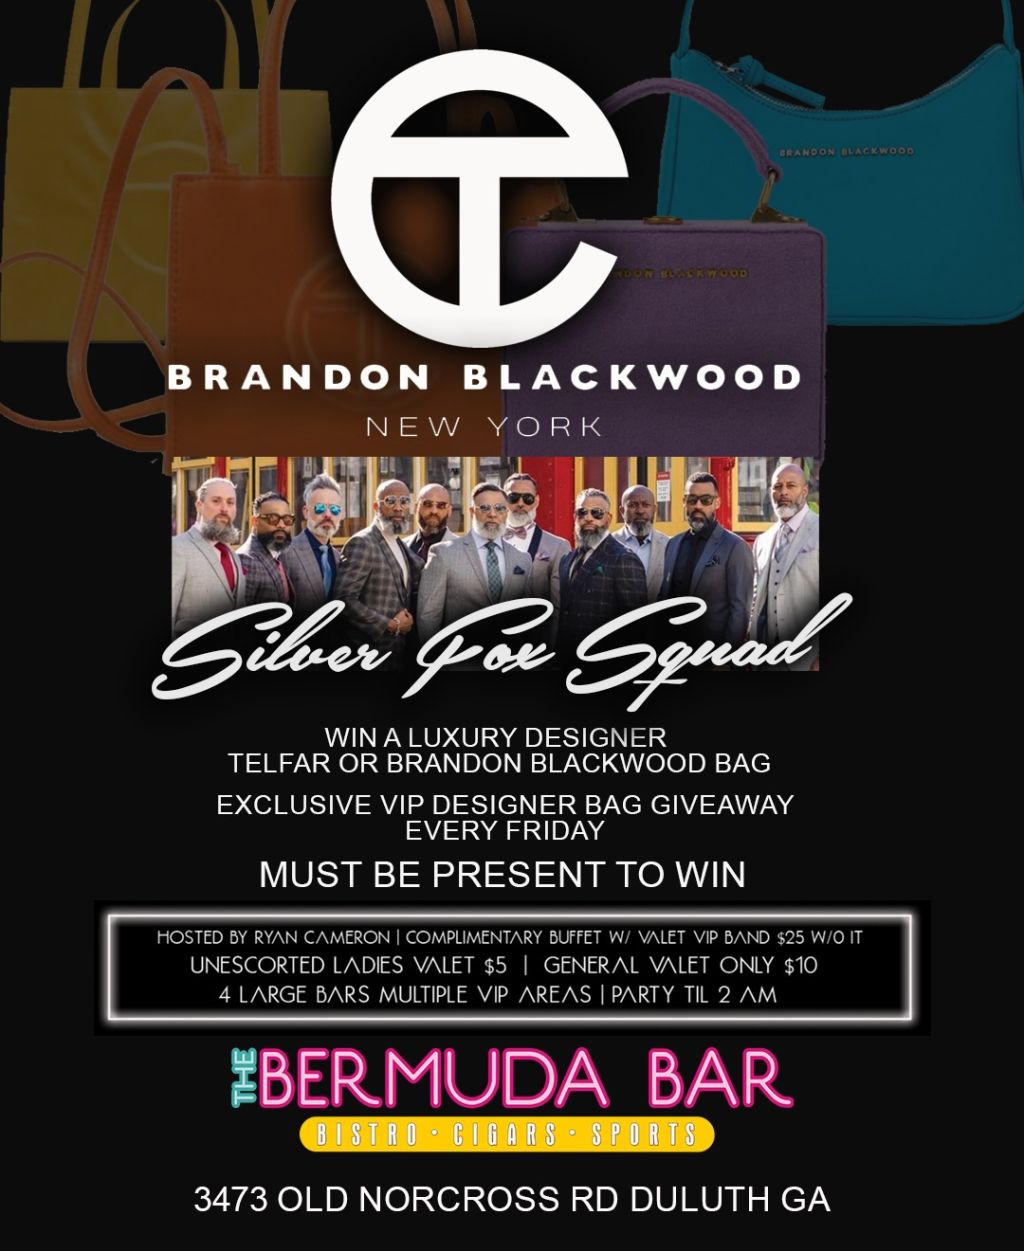 Bermuda Bar | Q4 Events